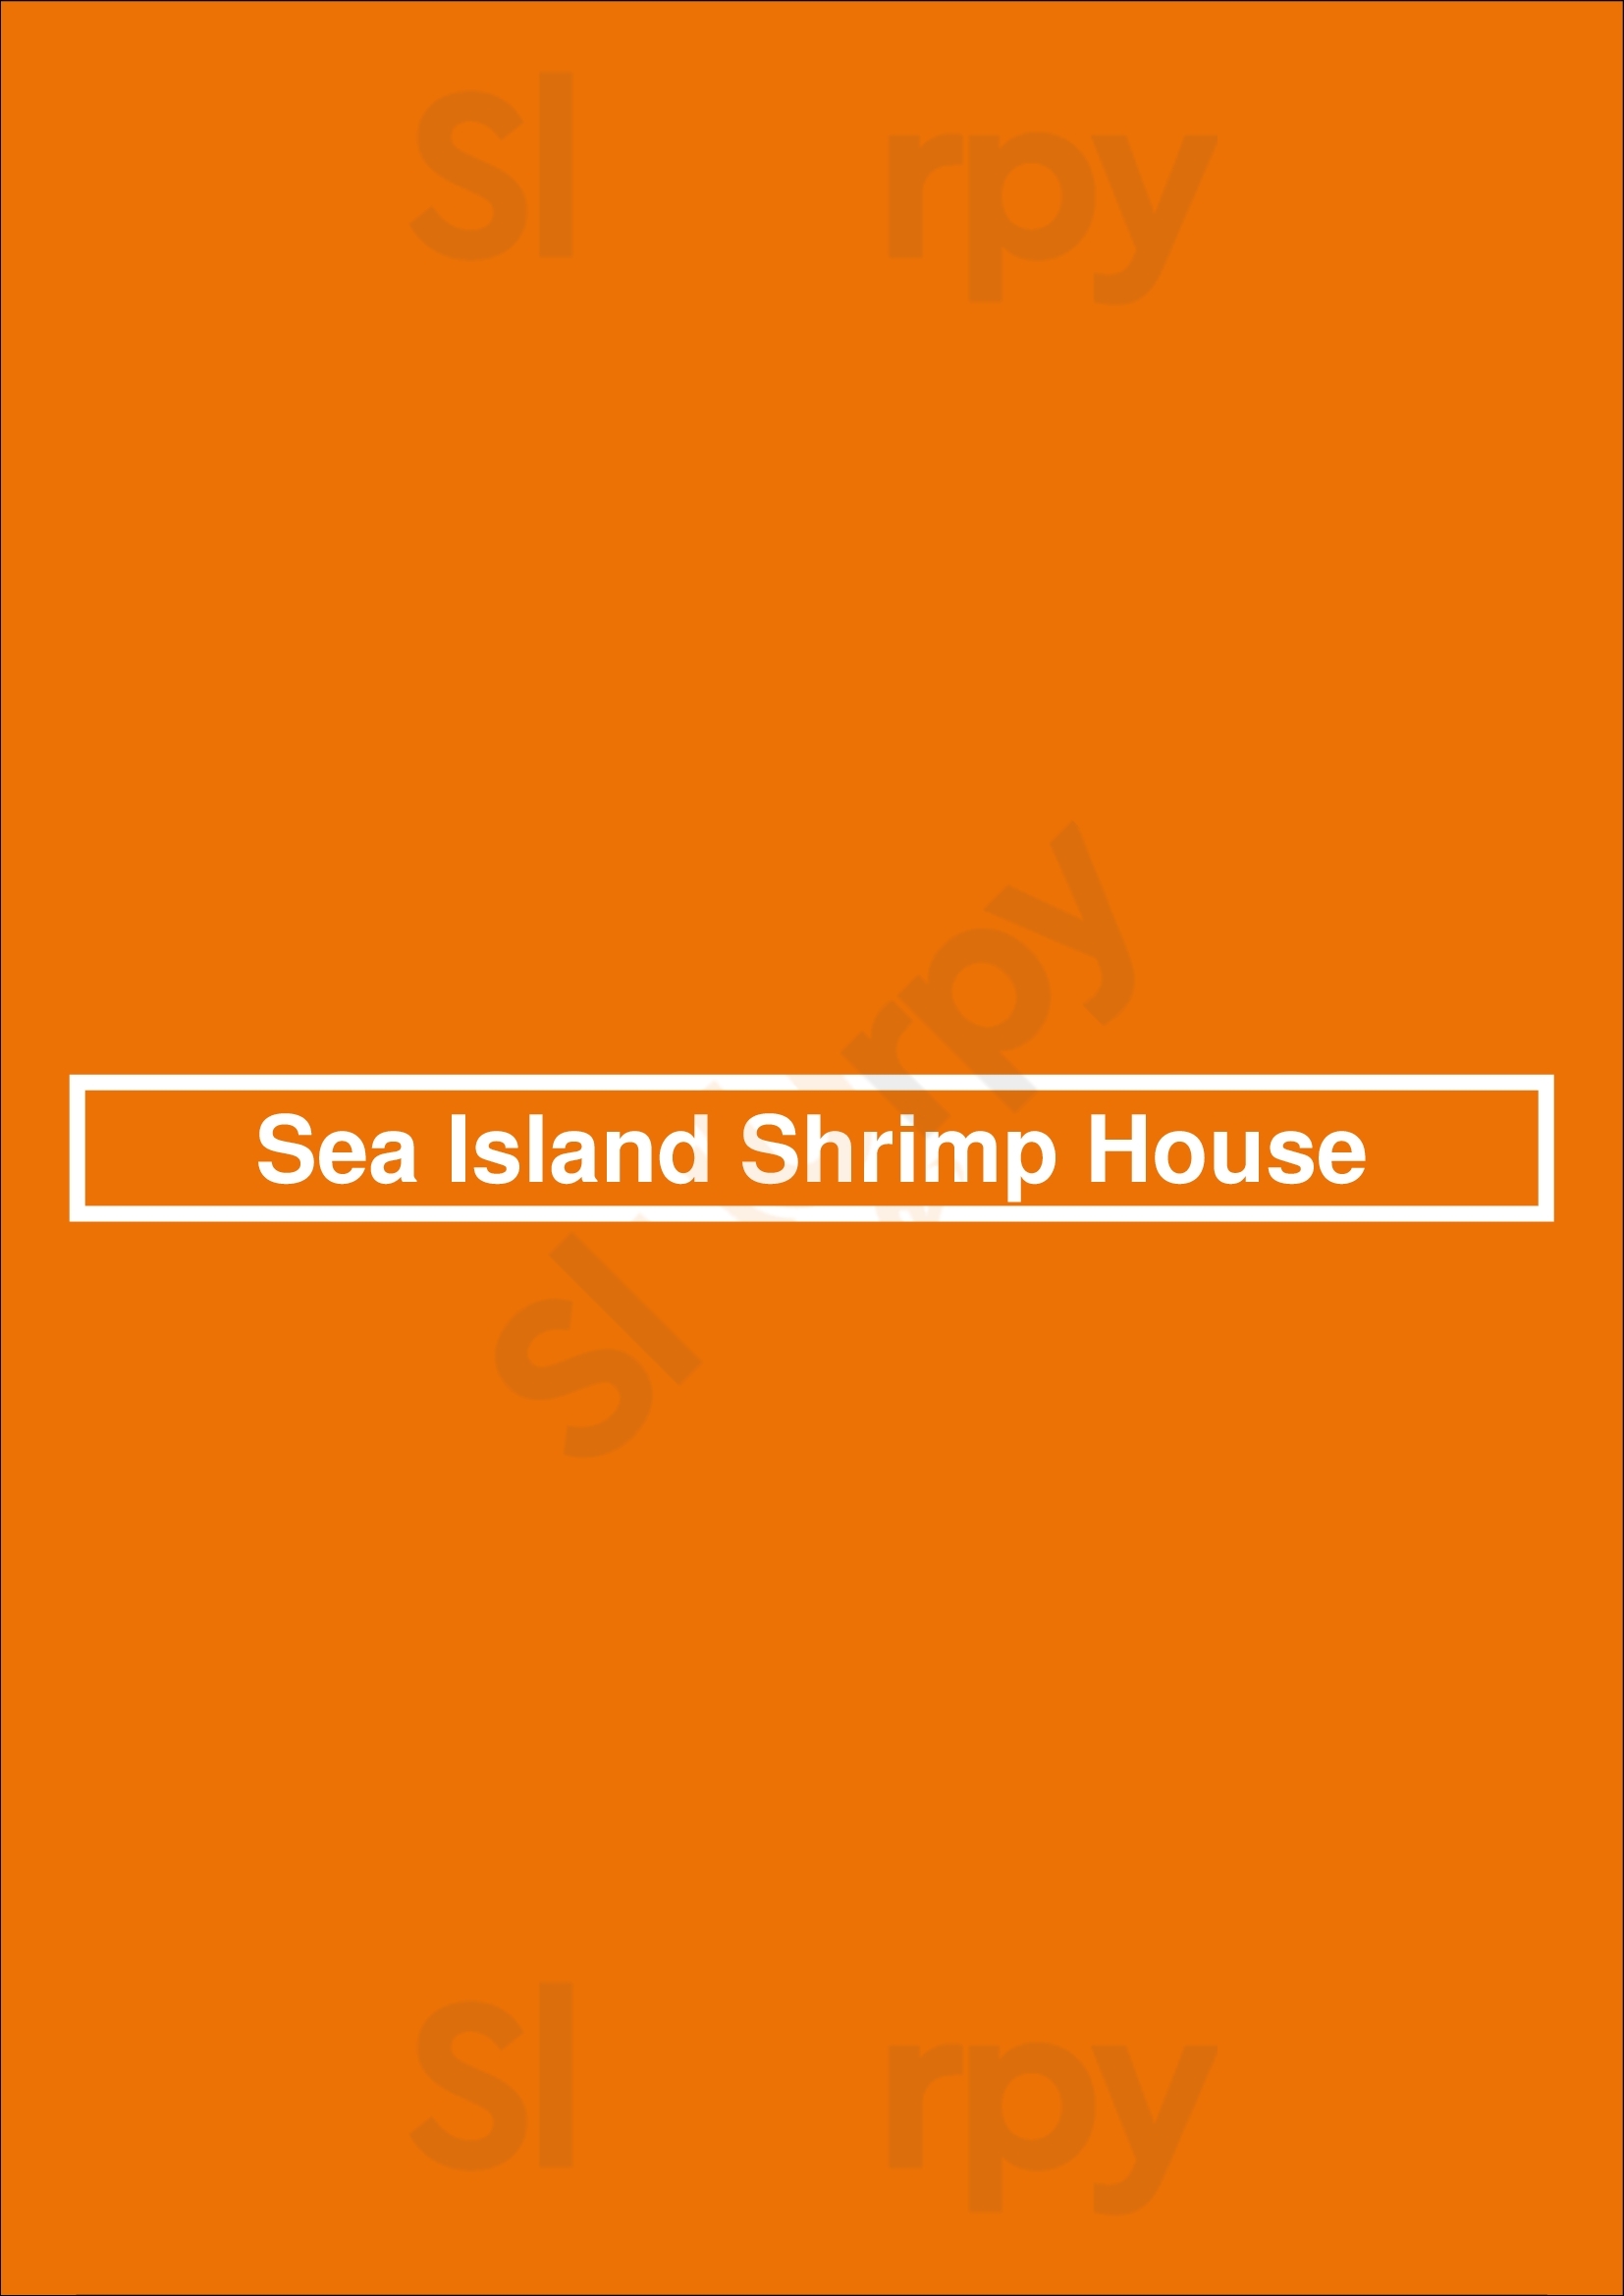 Sea Island Shrimp House San Antonio Menu - 1